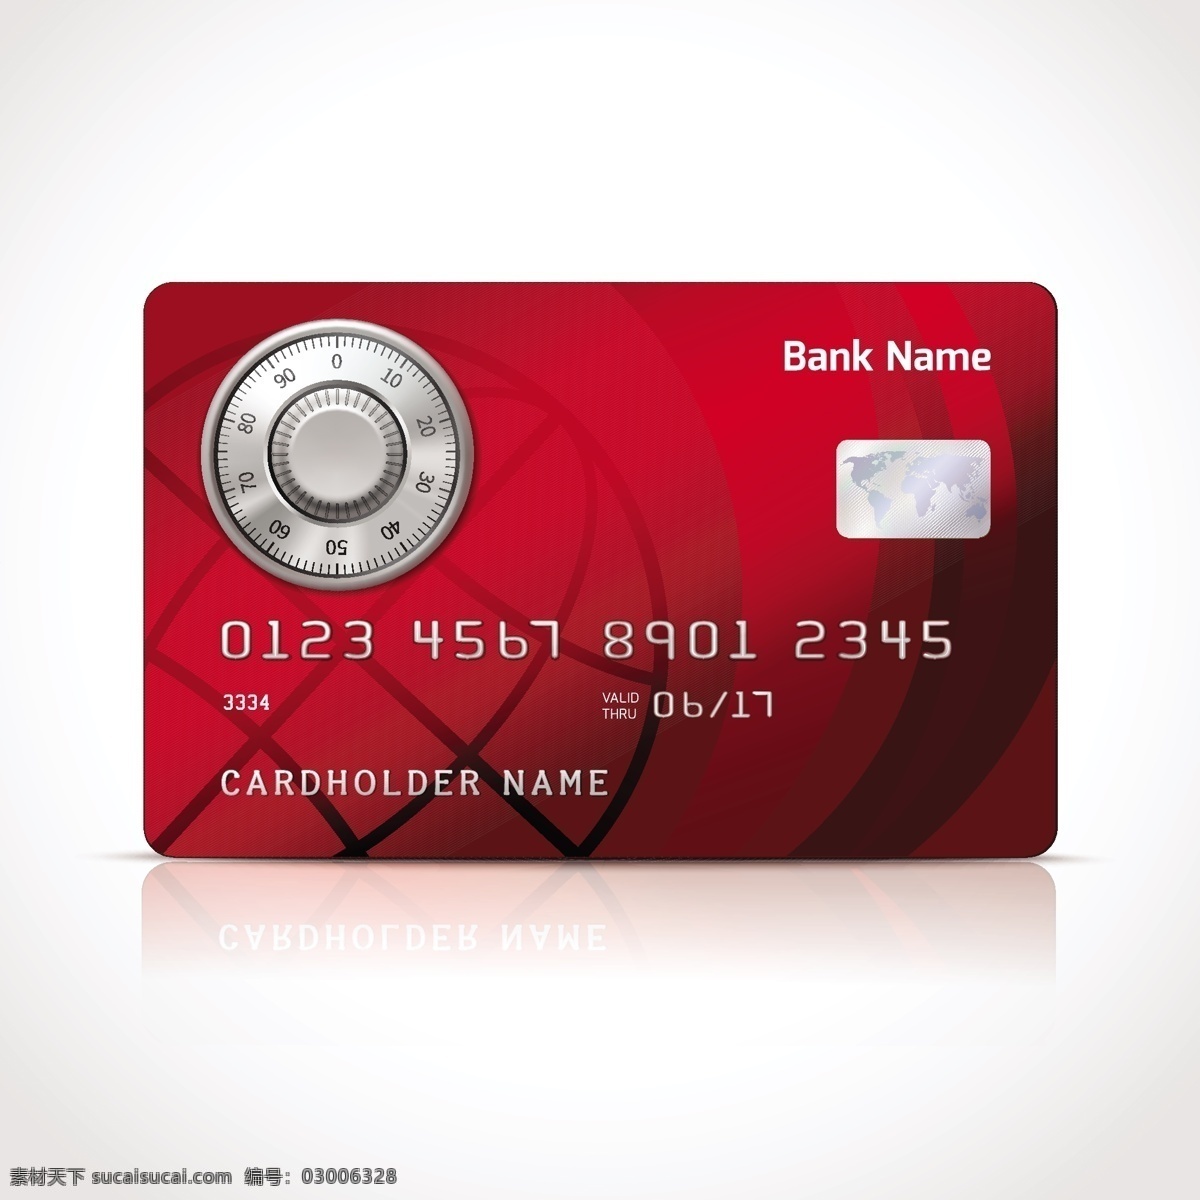 红色的信用卡 模拟卡 模板 购物 红色 颜色呈现 银行 信用卡 国际信用 实事求是 借记